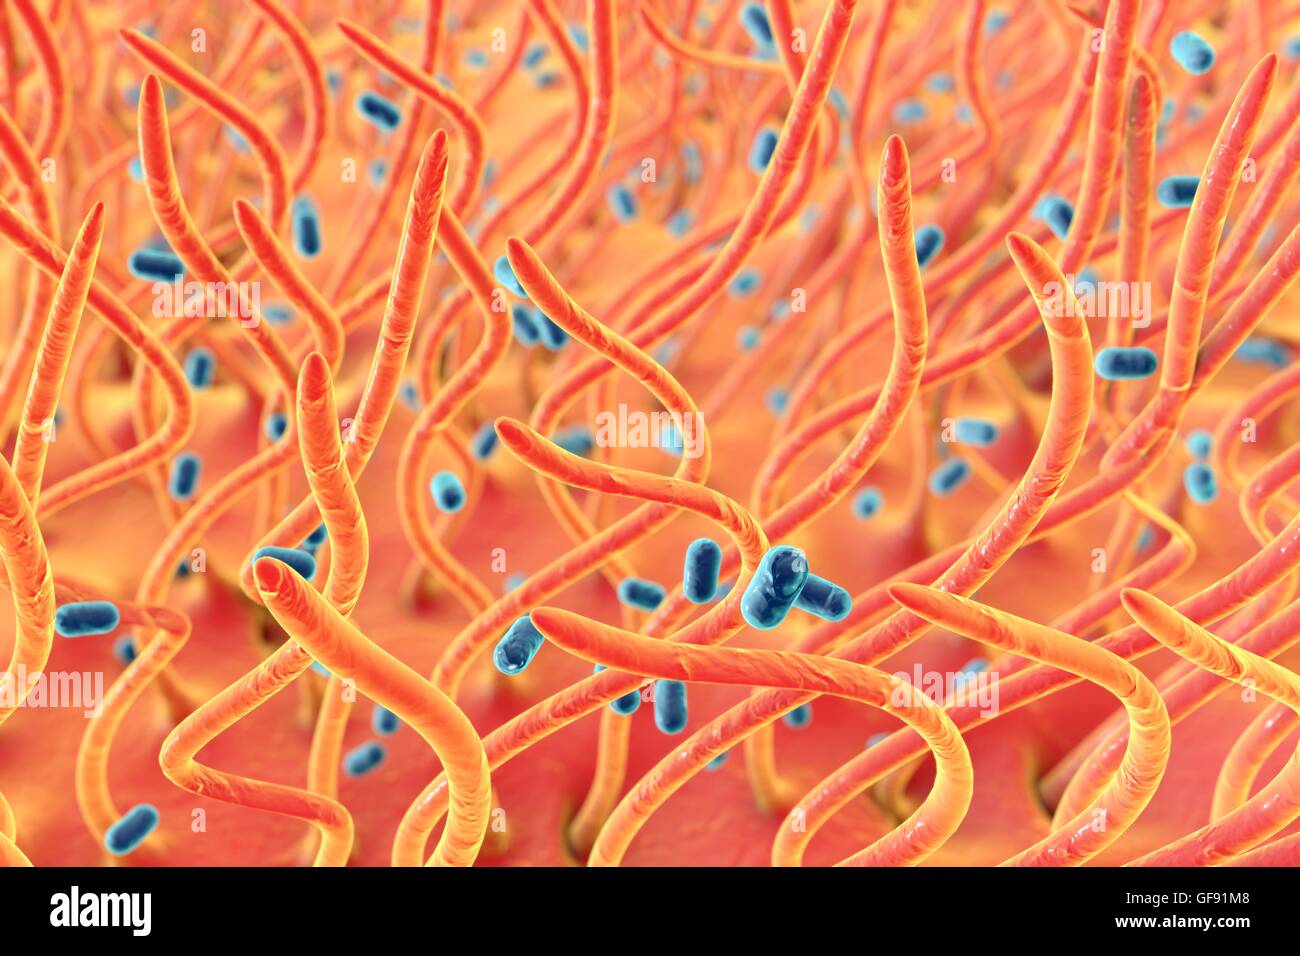 Bordetella Pertussis-Bakterium in Atemwegen. Computer-Abbildung der menschlichen trachealen Epithel mit stäbchenförmigen Bakterien Bordetella Pertussis (blau). B. Pertussis ist der Agent von Keuchhusten, die eine Infektion der Atemwege durch fi Stockfoto